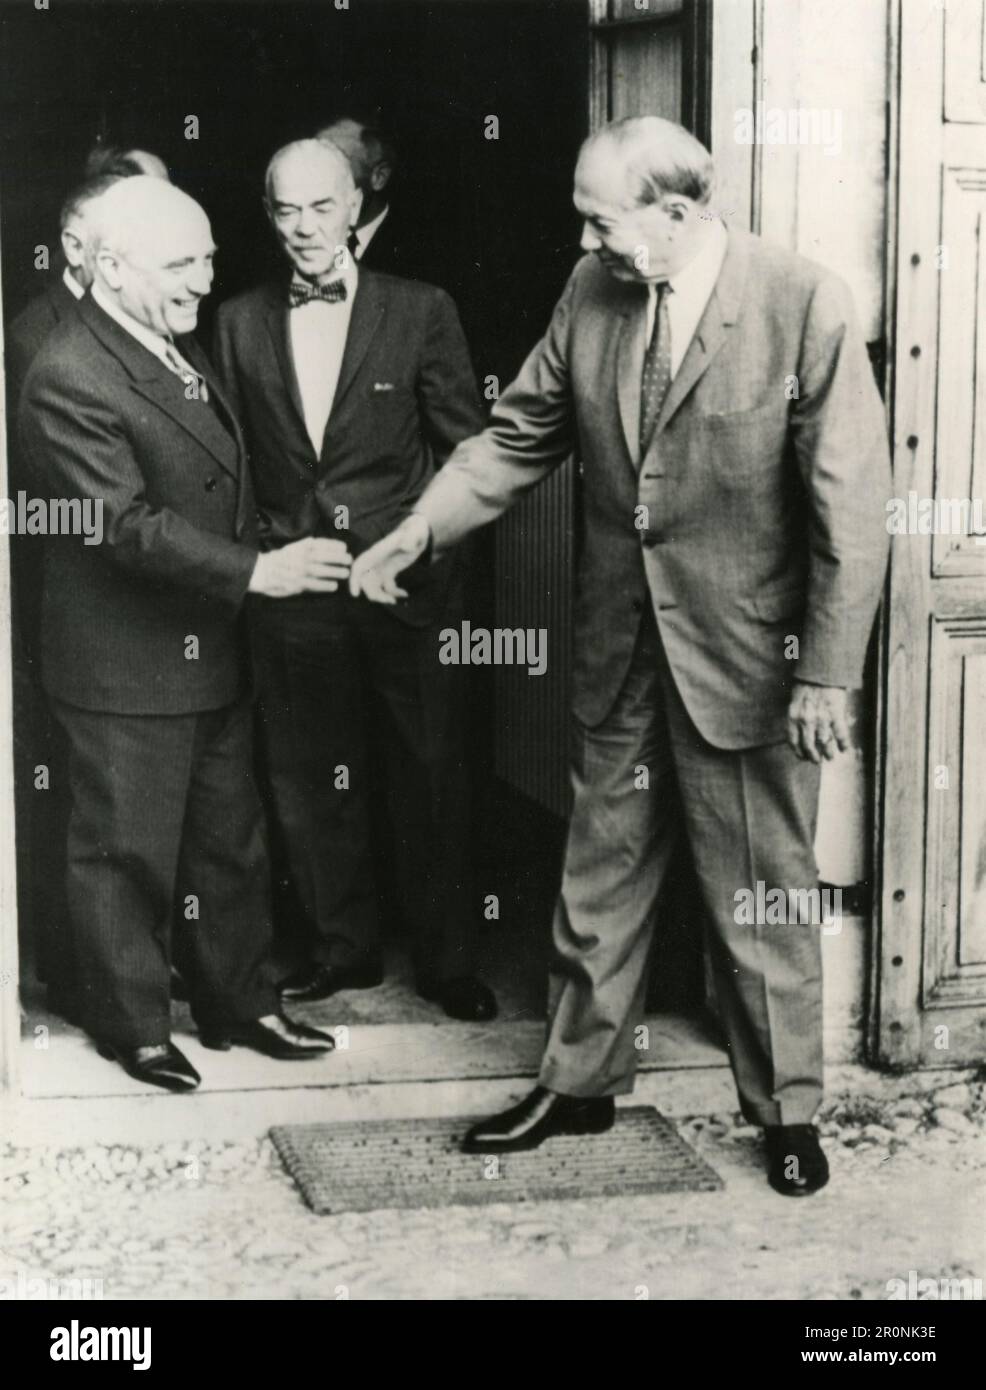 Der italienische Außenminister Amintore Fanfani und der amerikanische Chef entwaffnen William C. Foster sagen Goodby nach privaten Gesprächen, Genf Schweiz 1965 Stockfoto